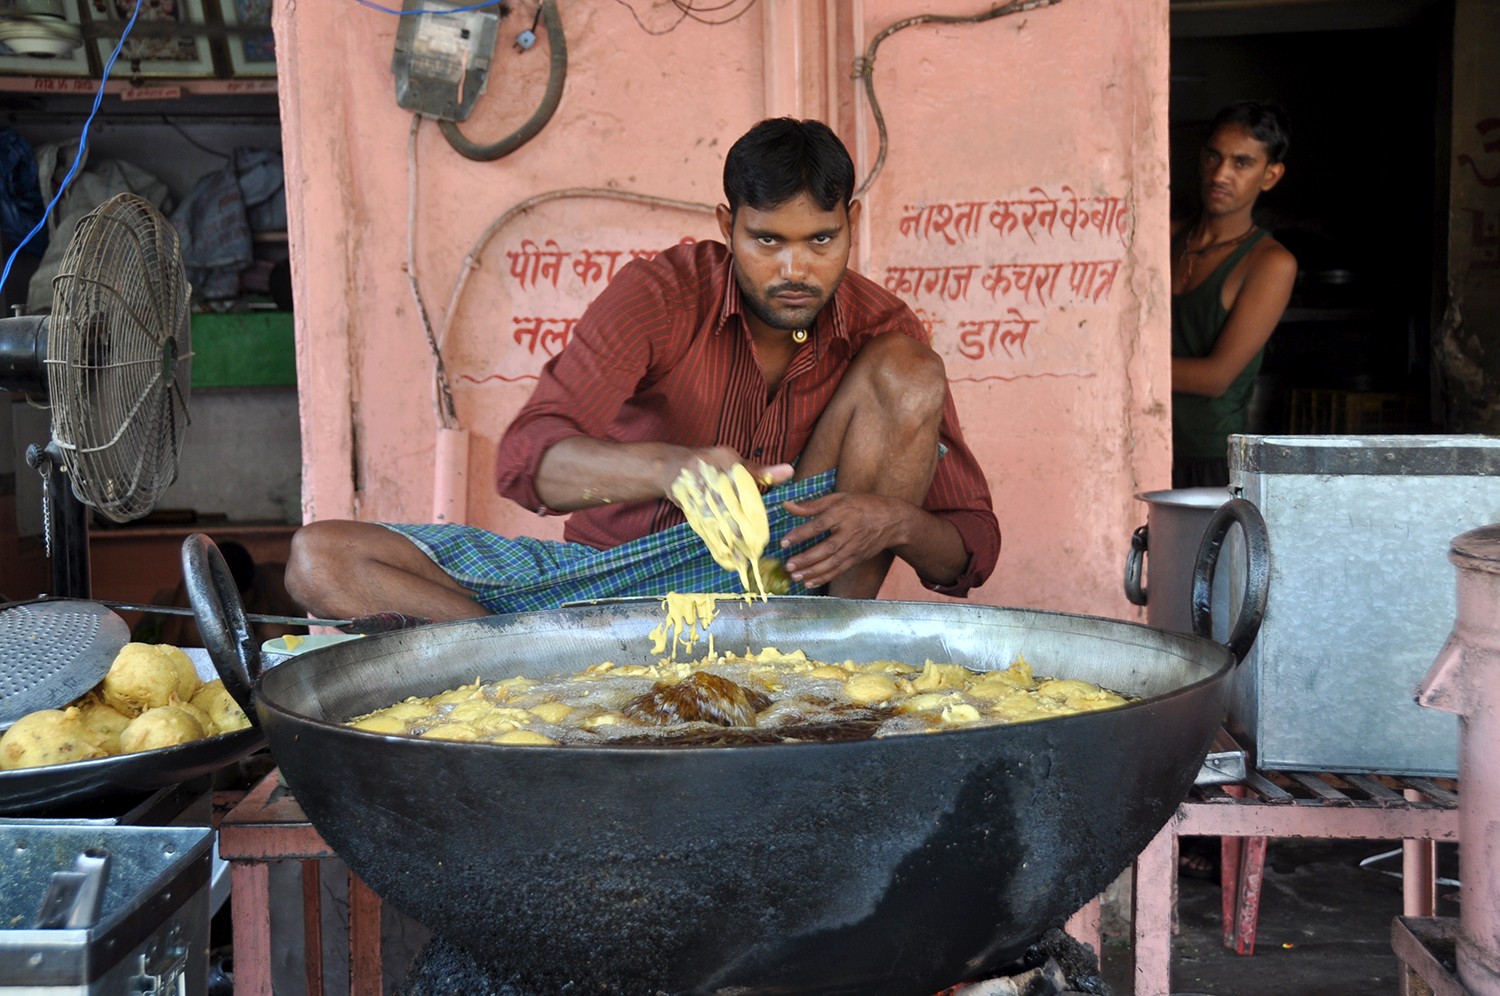 卖街头小吃的印度人